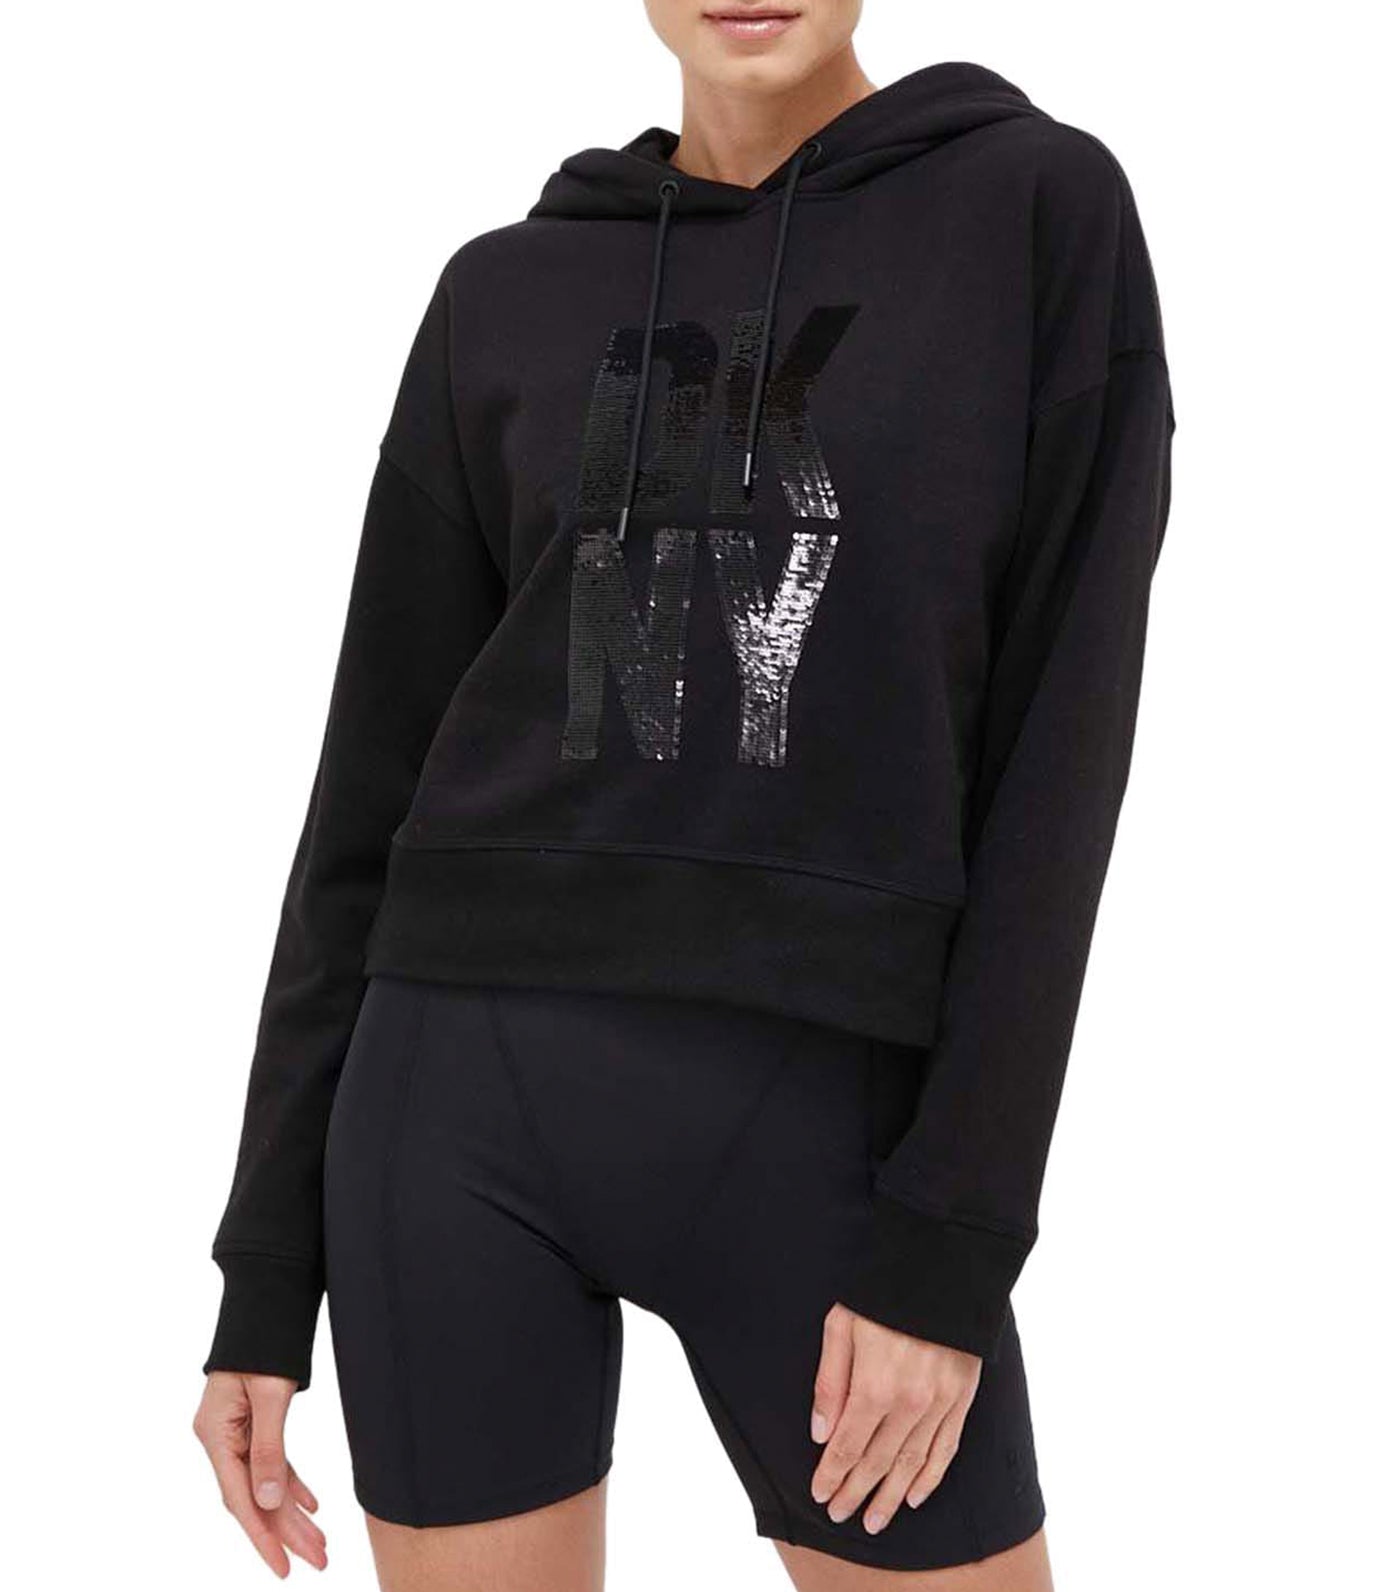 DKNY Womens Activewear Sport Printed logo Hoodie Dress,Black